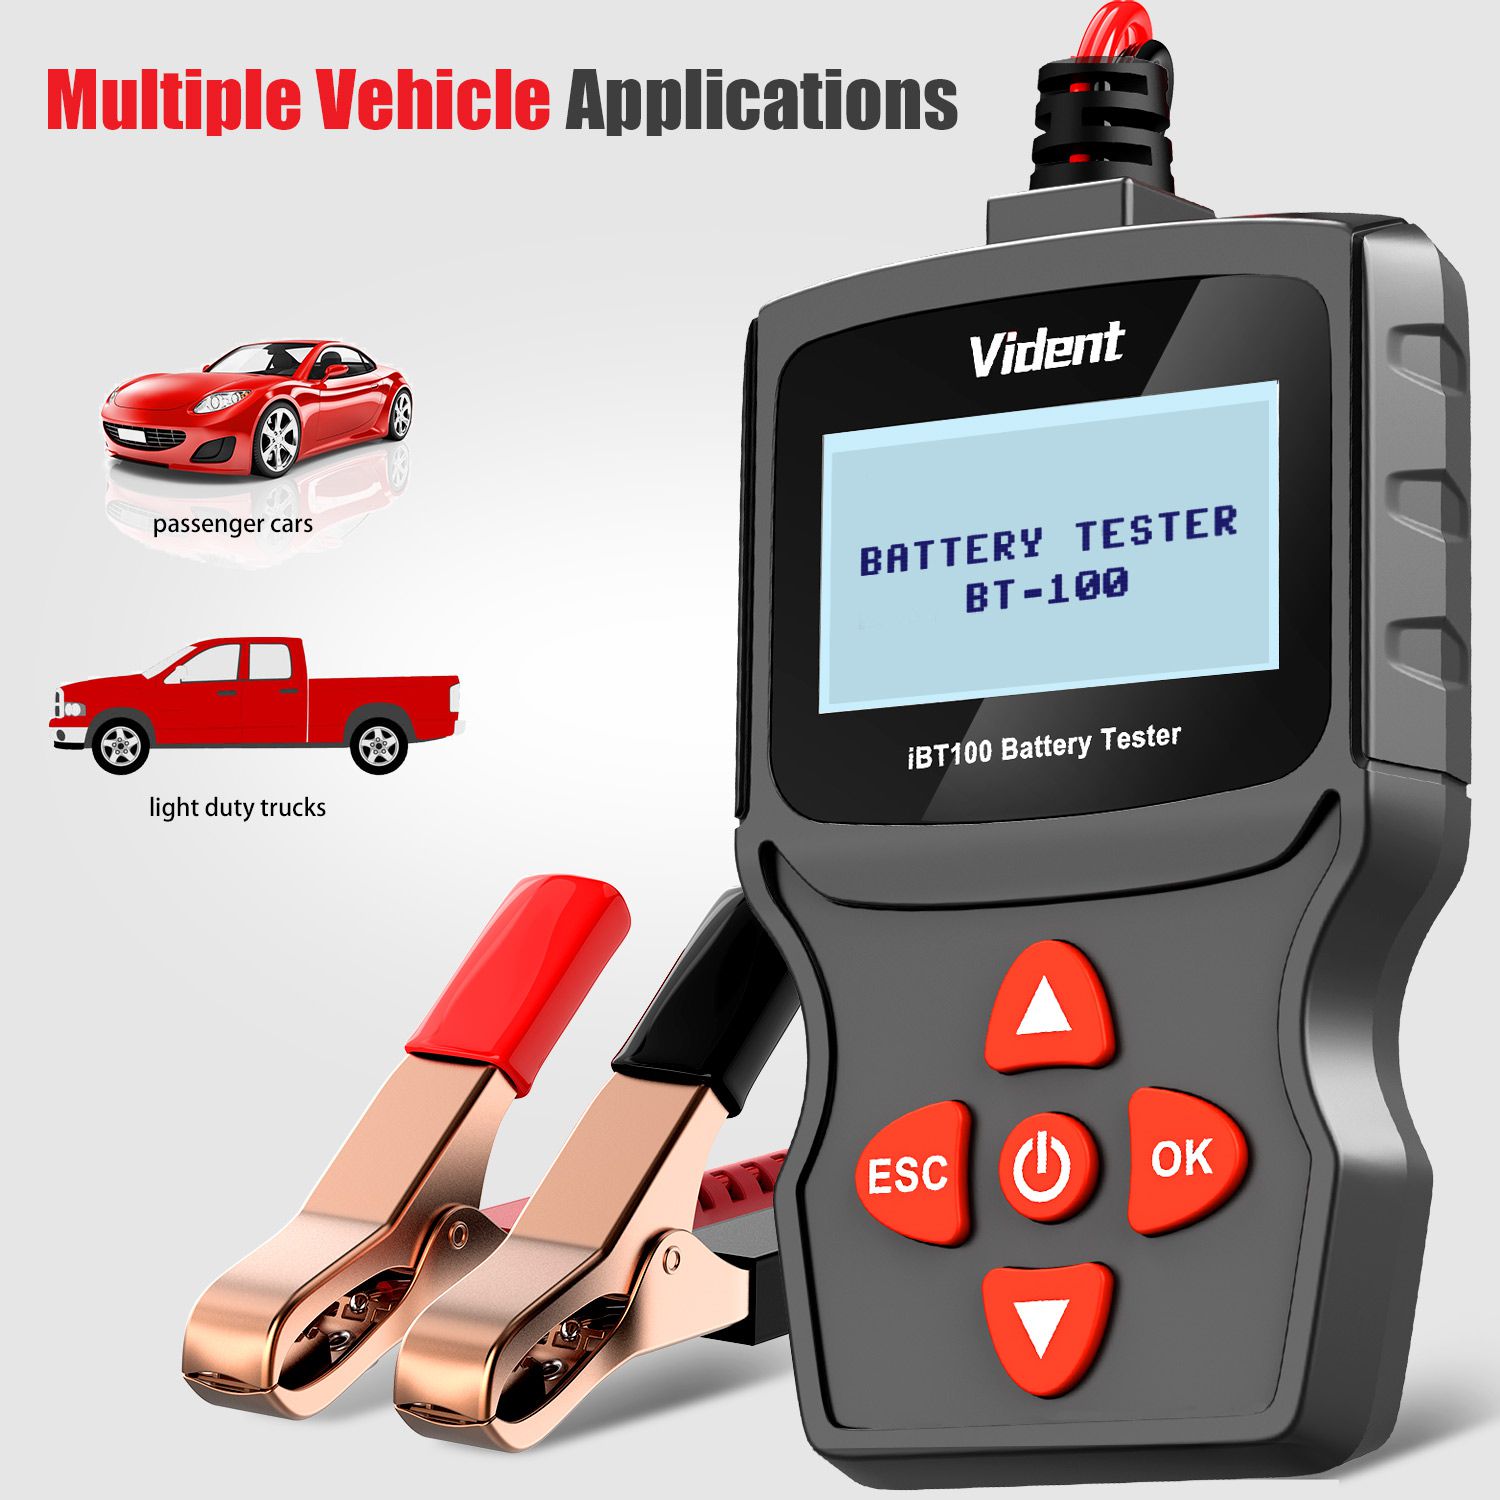 Analizador de batería vident ibt100 12v, adecuado para inundaciones, agm, gel 100 - 1100cca herramientas de diagnóstico de probadores automotrices